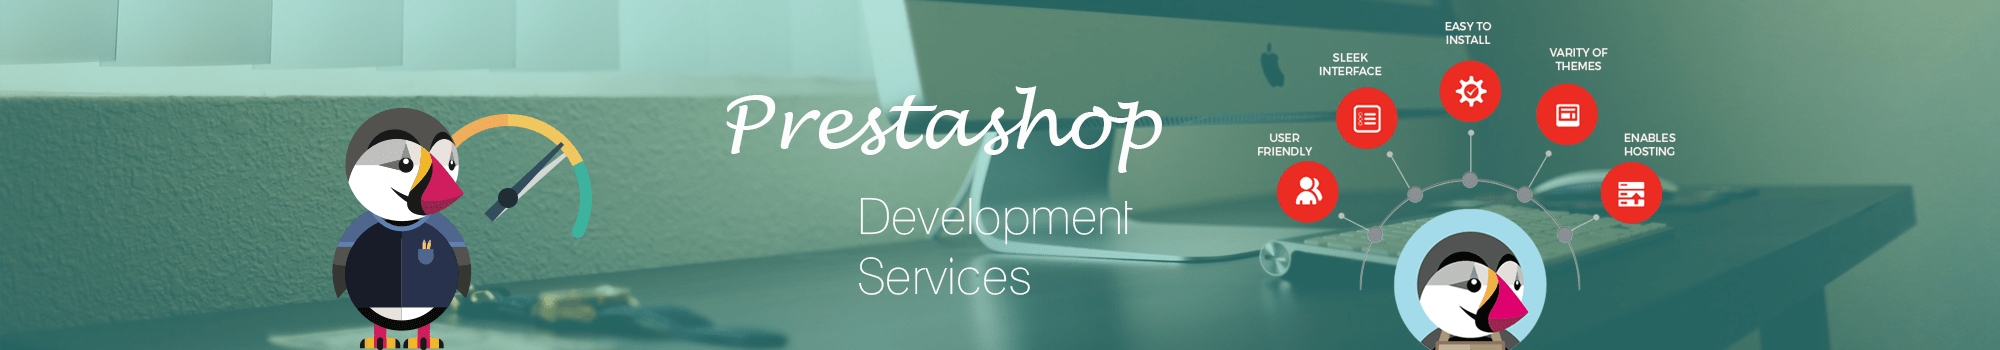 Prestashop Website Development Services